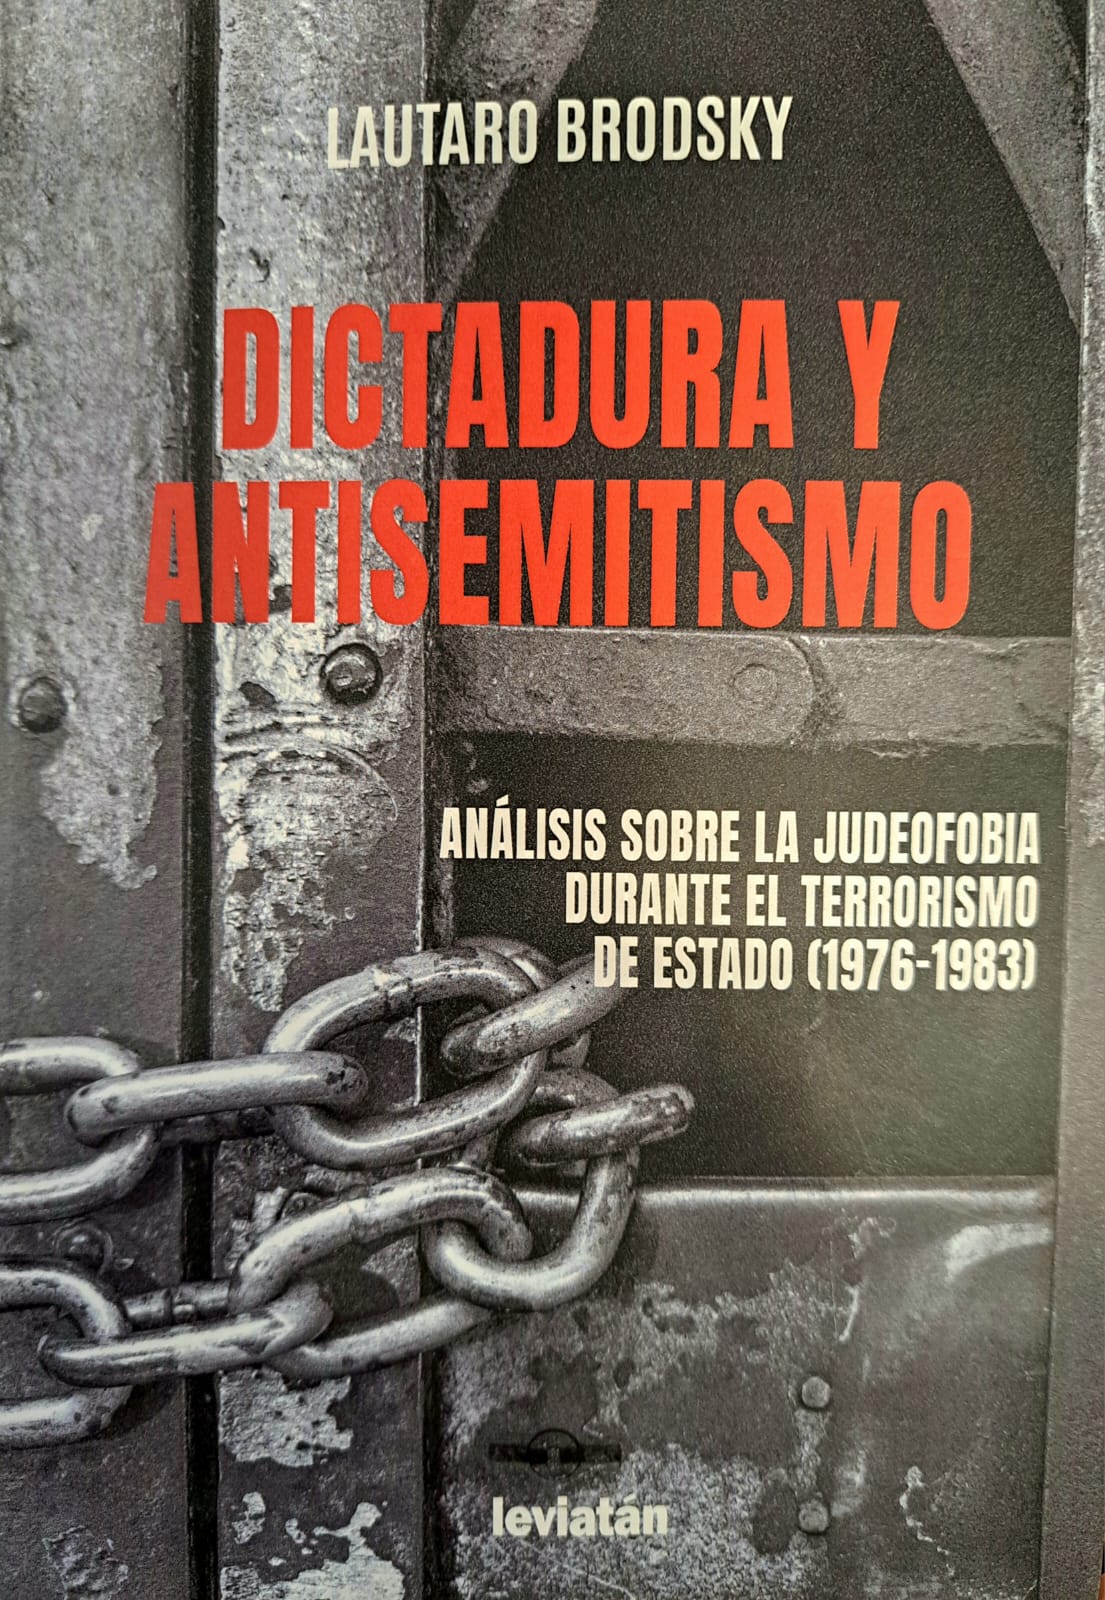 Dictadura y antisemitismo: un libro que impulsa la política de memoria, verdad y justicia